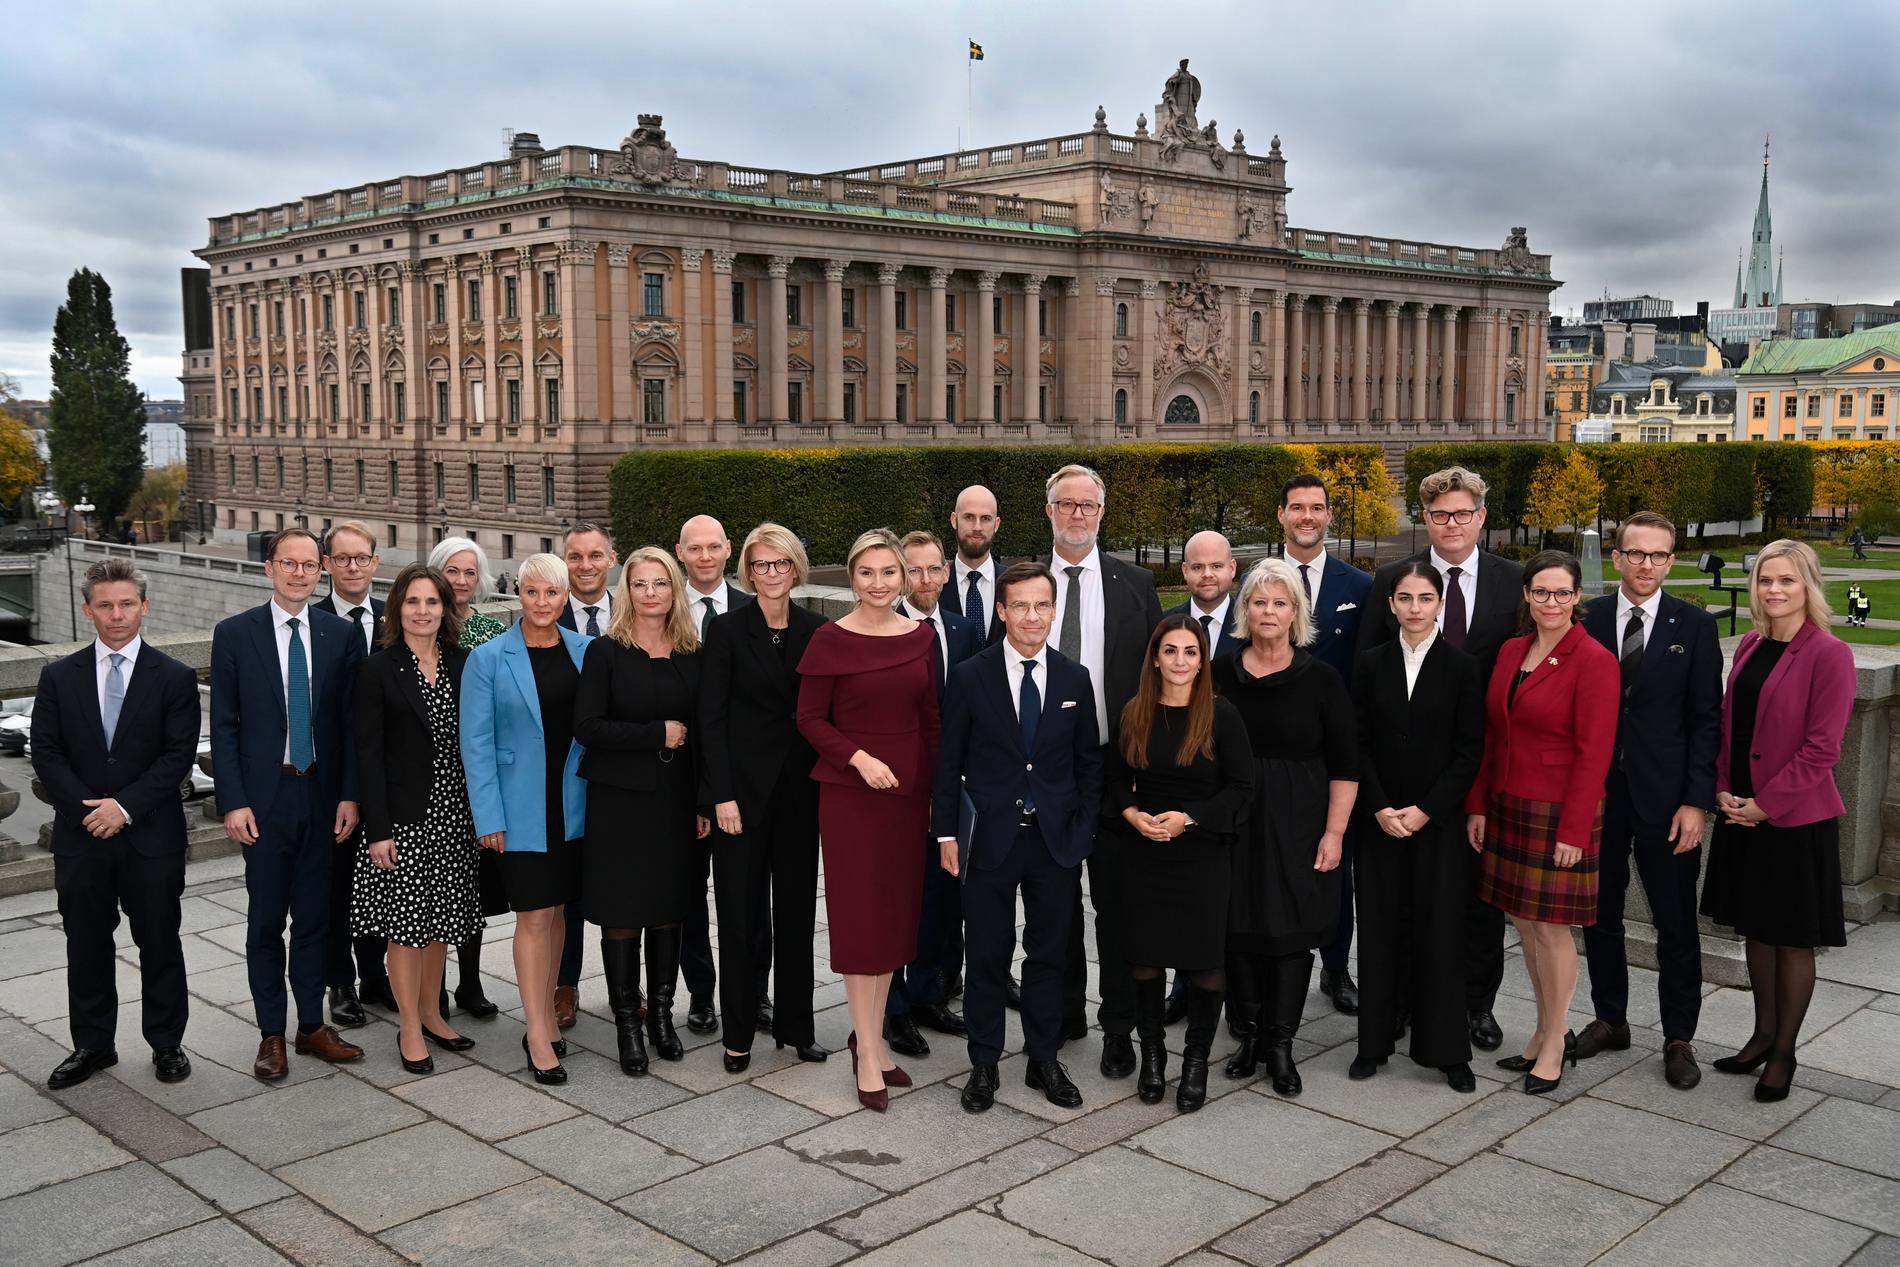 När Ulf Kristersson presenterade sin regering i oktober 2022 beskrevs den som ”den mest akademiska regeringen i modern tid” av stiftelsen Academic Rights Watch. 